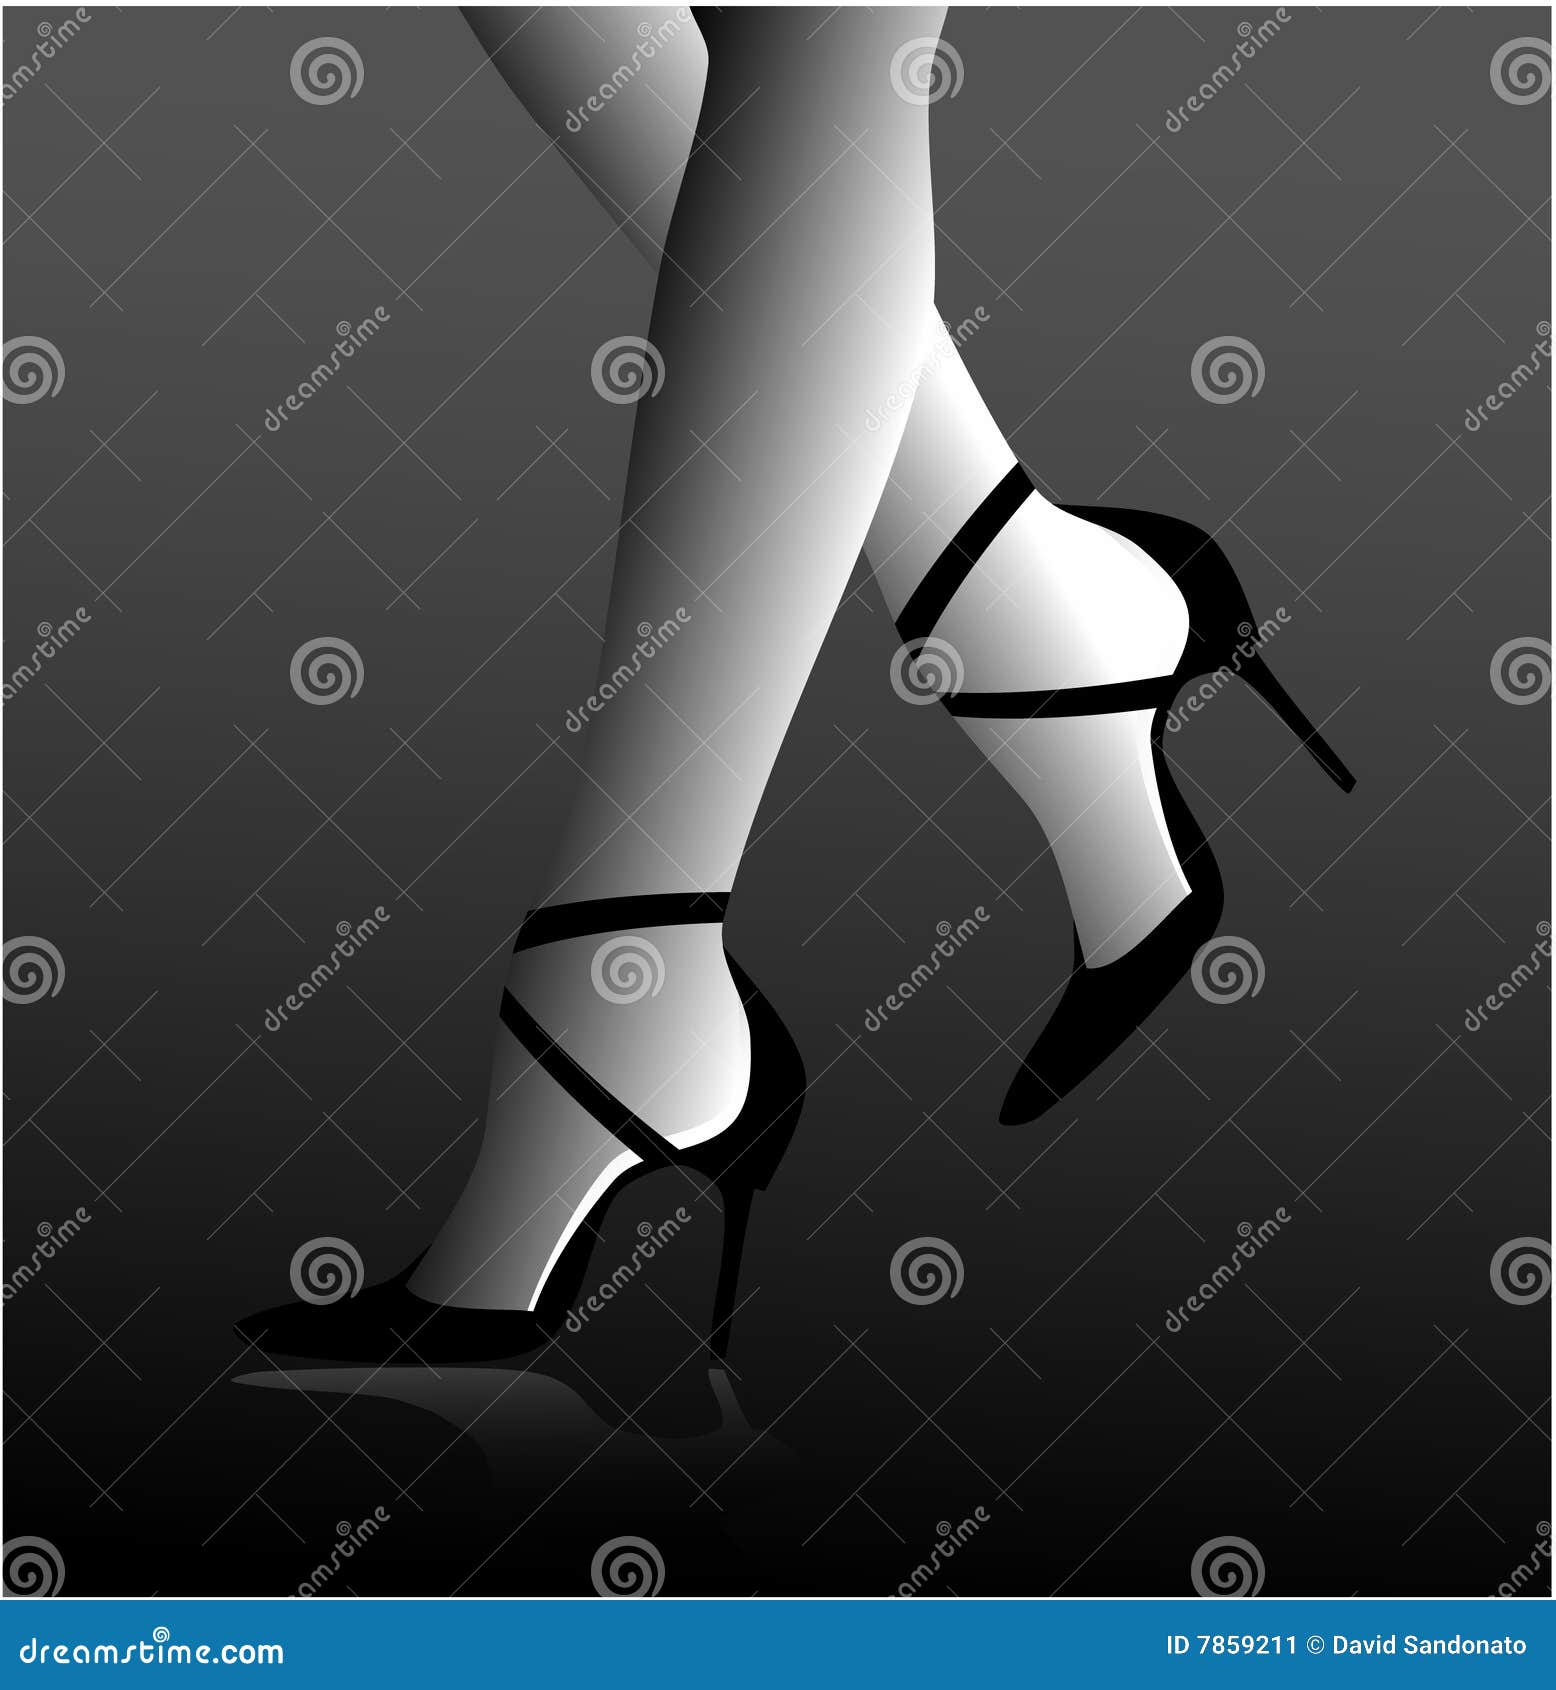 stiletto heels on woman